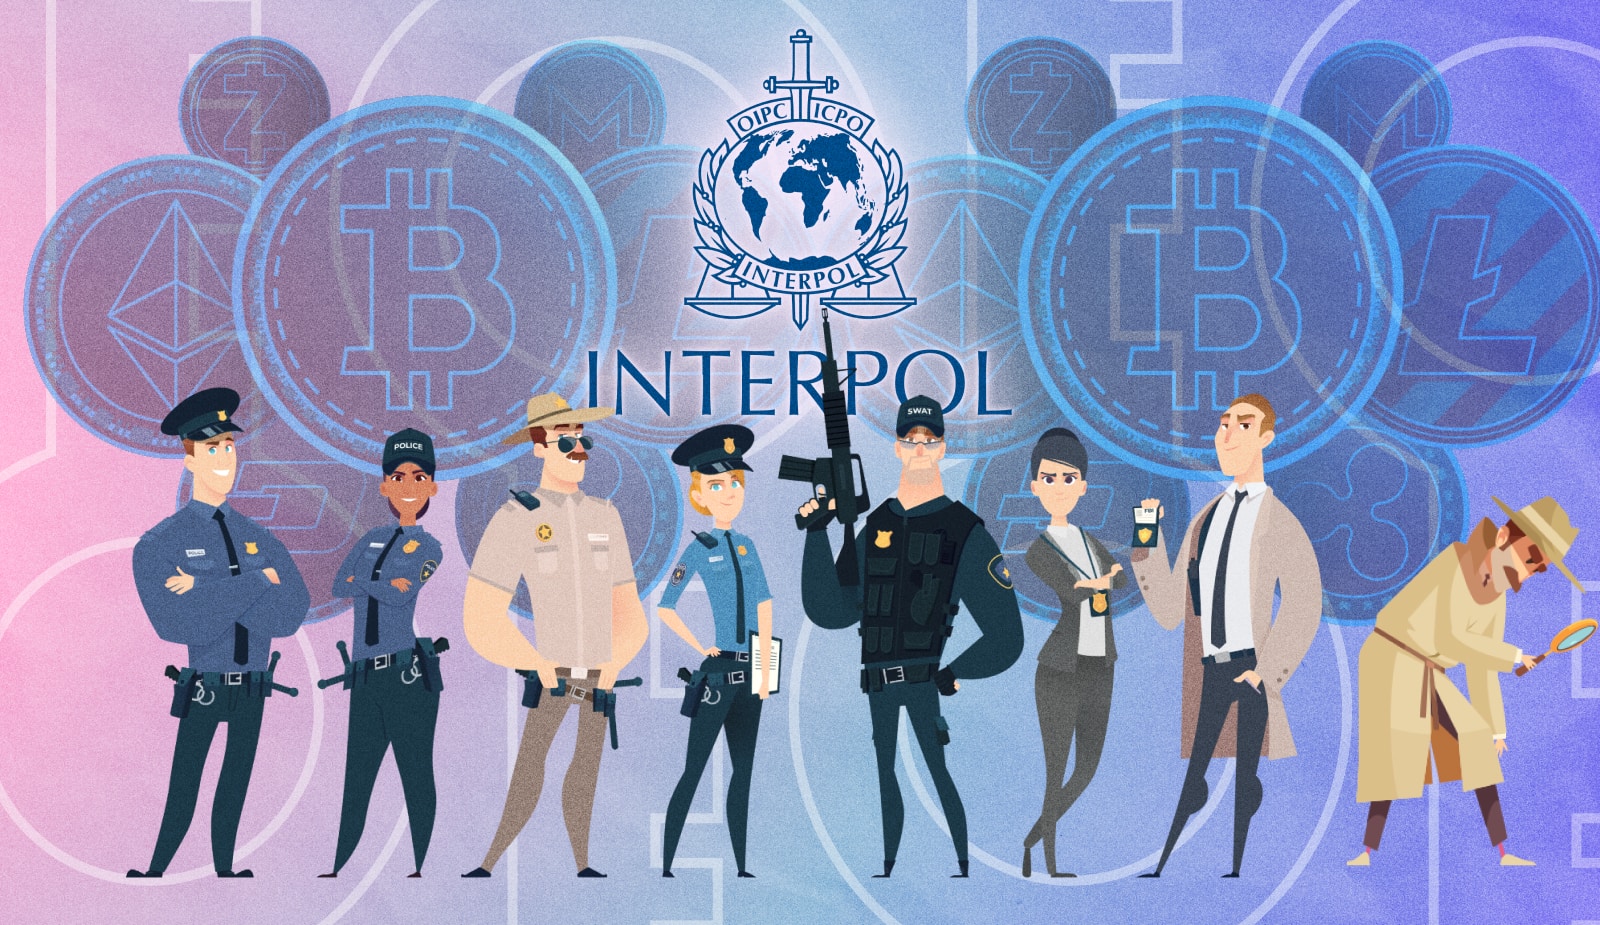 Інтерпол сформував підрозділ для боротьби зі злочинами в крипто-сфері. Головний колаж новини.